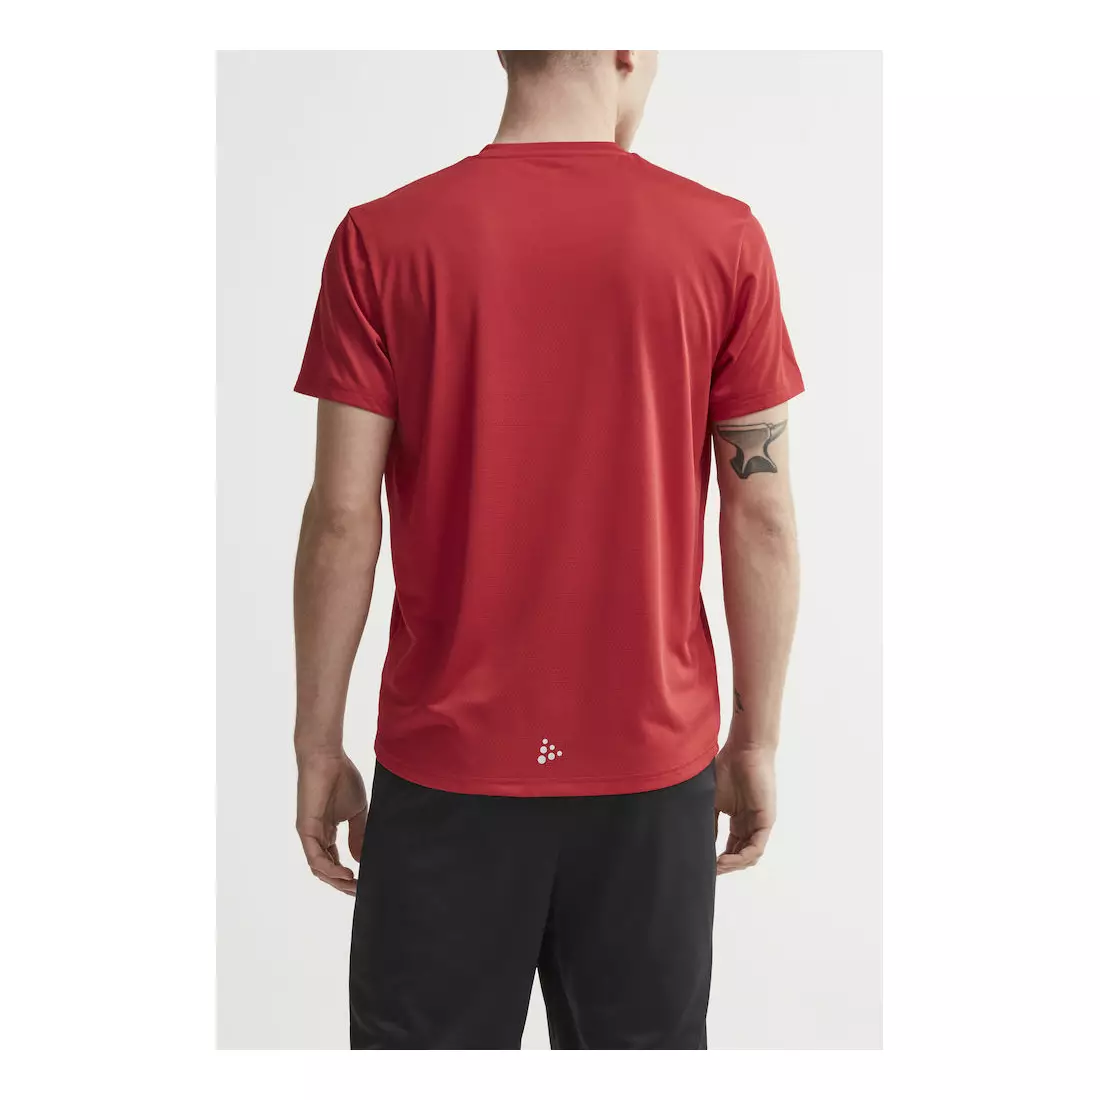 CRAFT EAZE MESH férfi sport / futó póló piros 1907018-432000